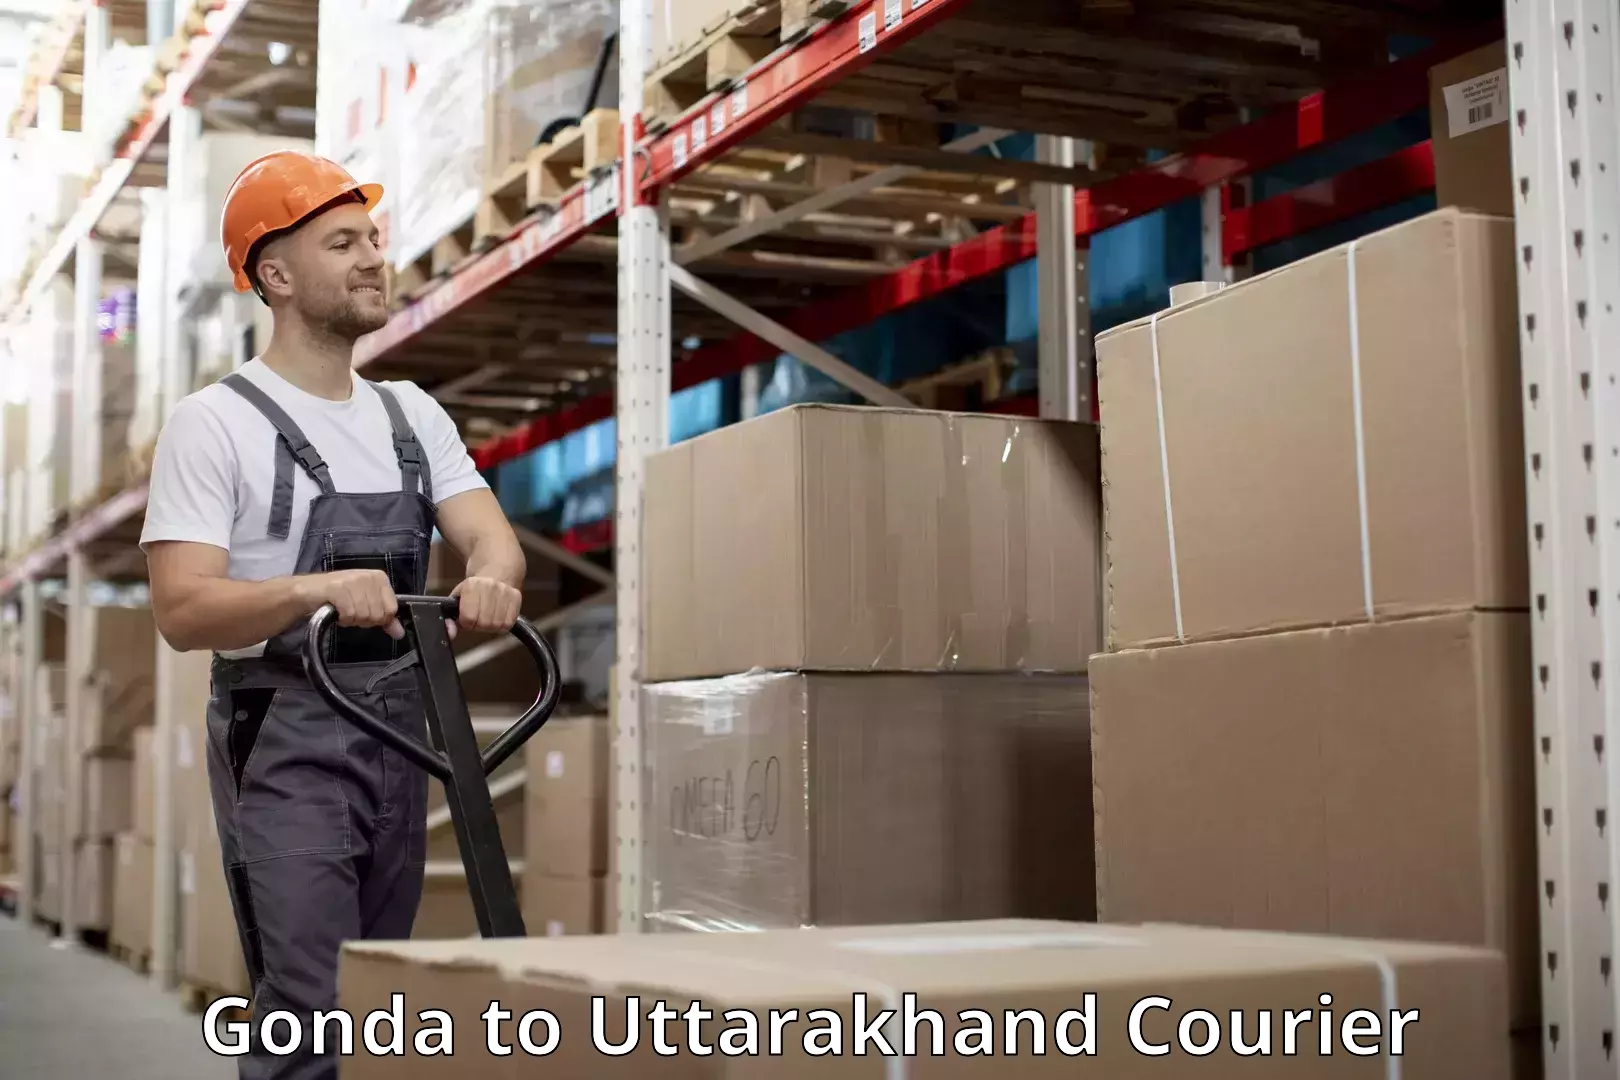 Hassle-free luggage shipping Gonda to Uttarakhand